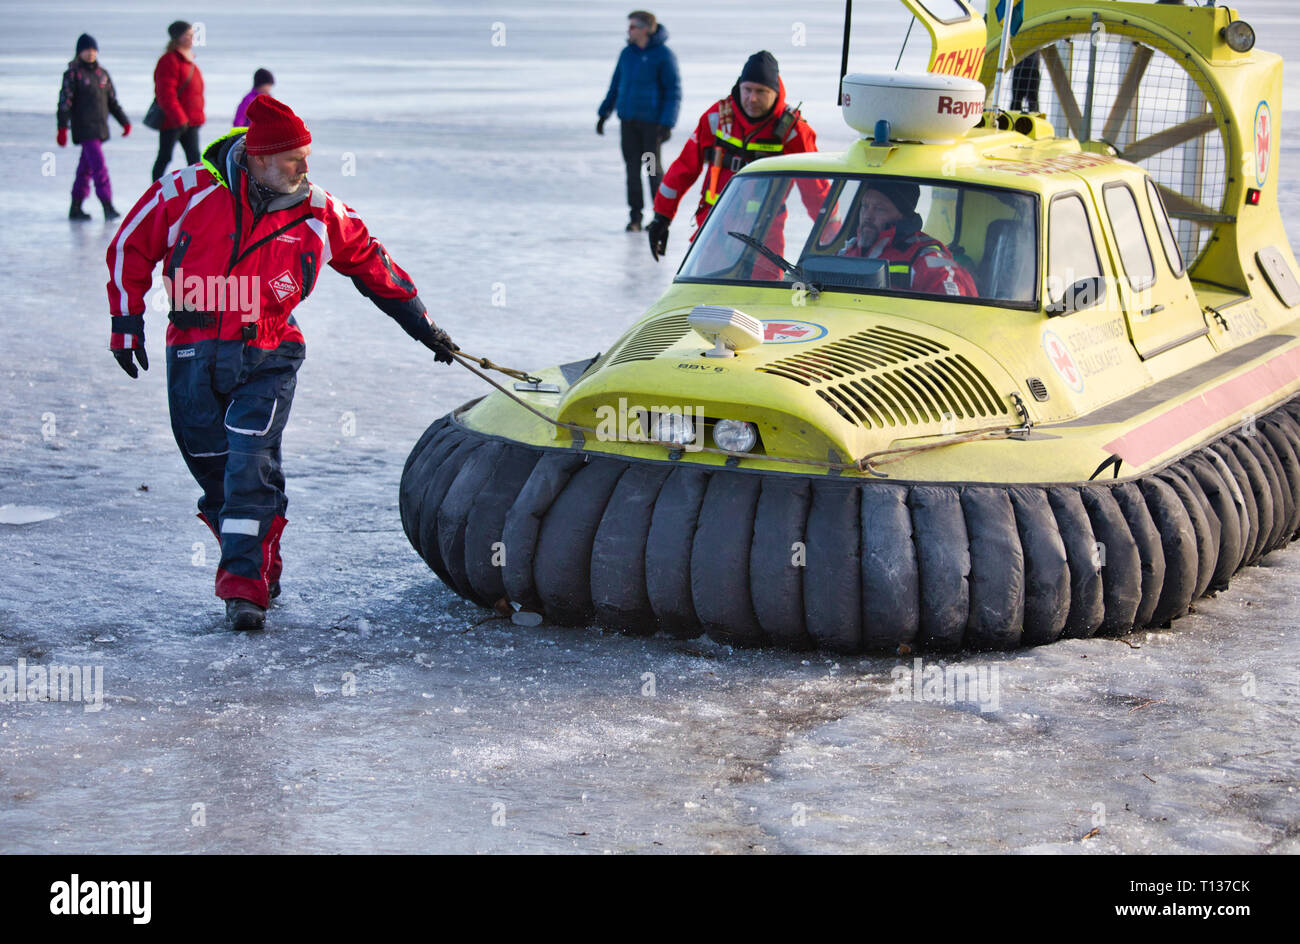 Aéroglisseur de couverts et de l'équipage de l'Agence suédoise de la Société de sauvetage en mer sur la glace du lac Malaren, Sigtuna, Suède, Scandinavie Banque D'Images